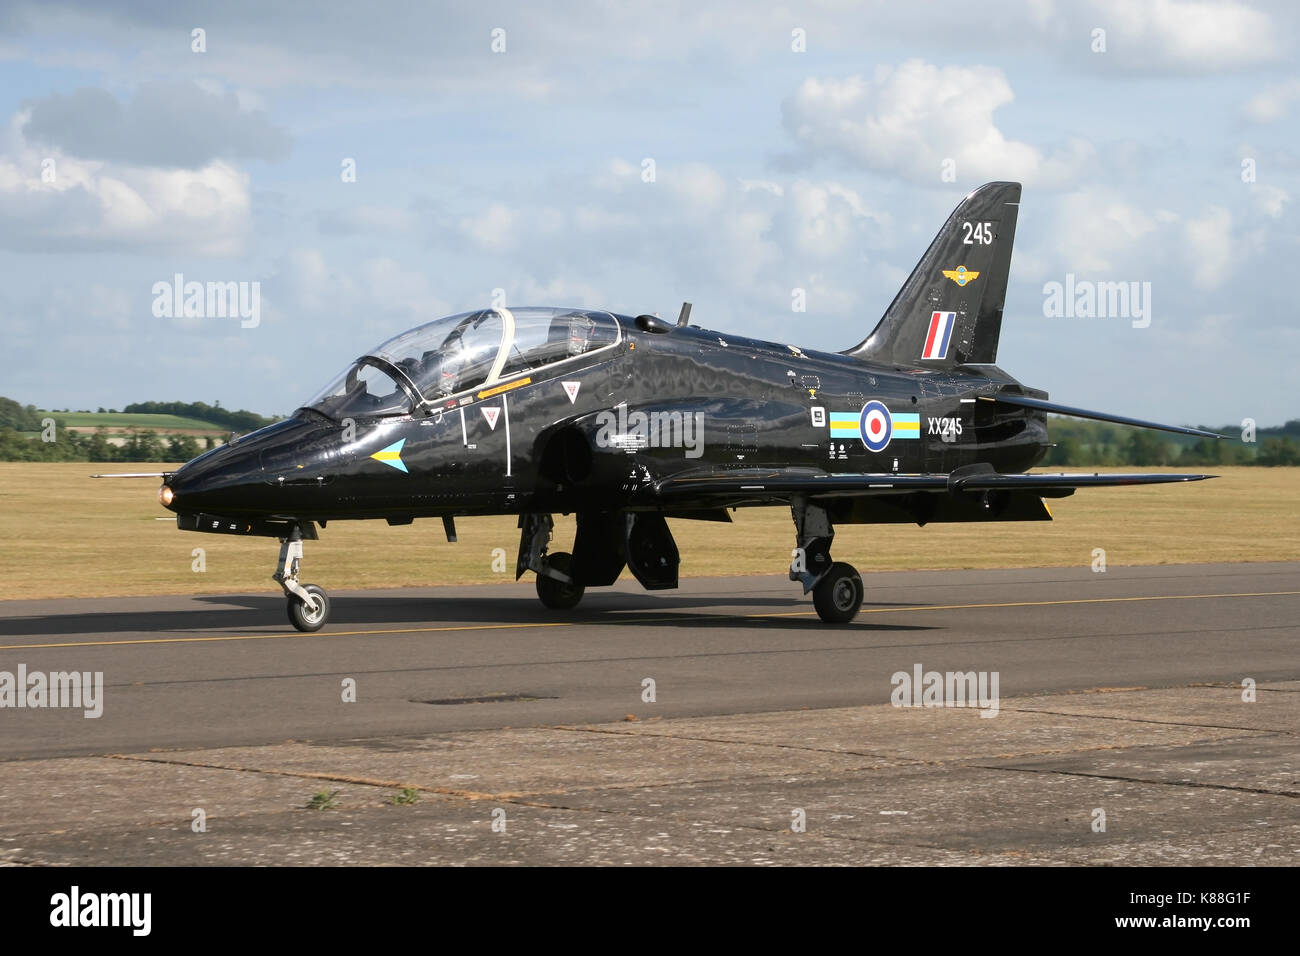 Il 2011 RAF solo display Hawk pilota in rullaggio dopo un display a Duxford, Flt Lt Juliette Fleming fu la RAF il primo ufficiale di schermo femmina pilota. Foto Stock